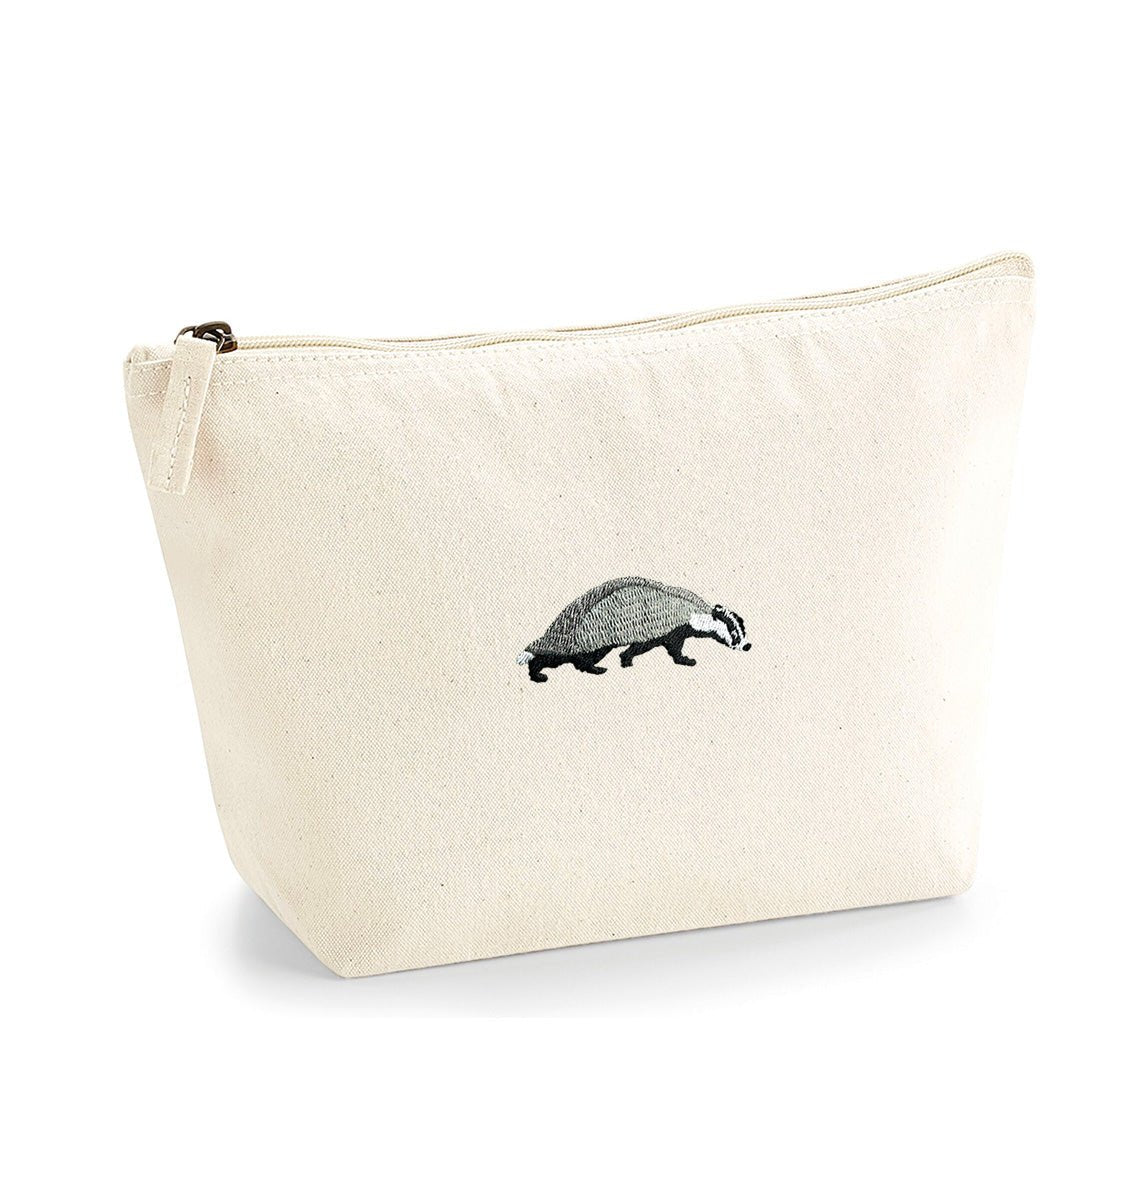 Badger Organic Accessory Bag - Blue Panda